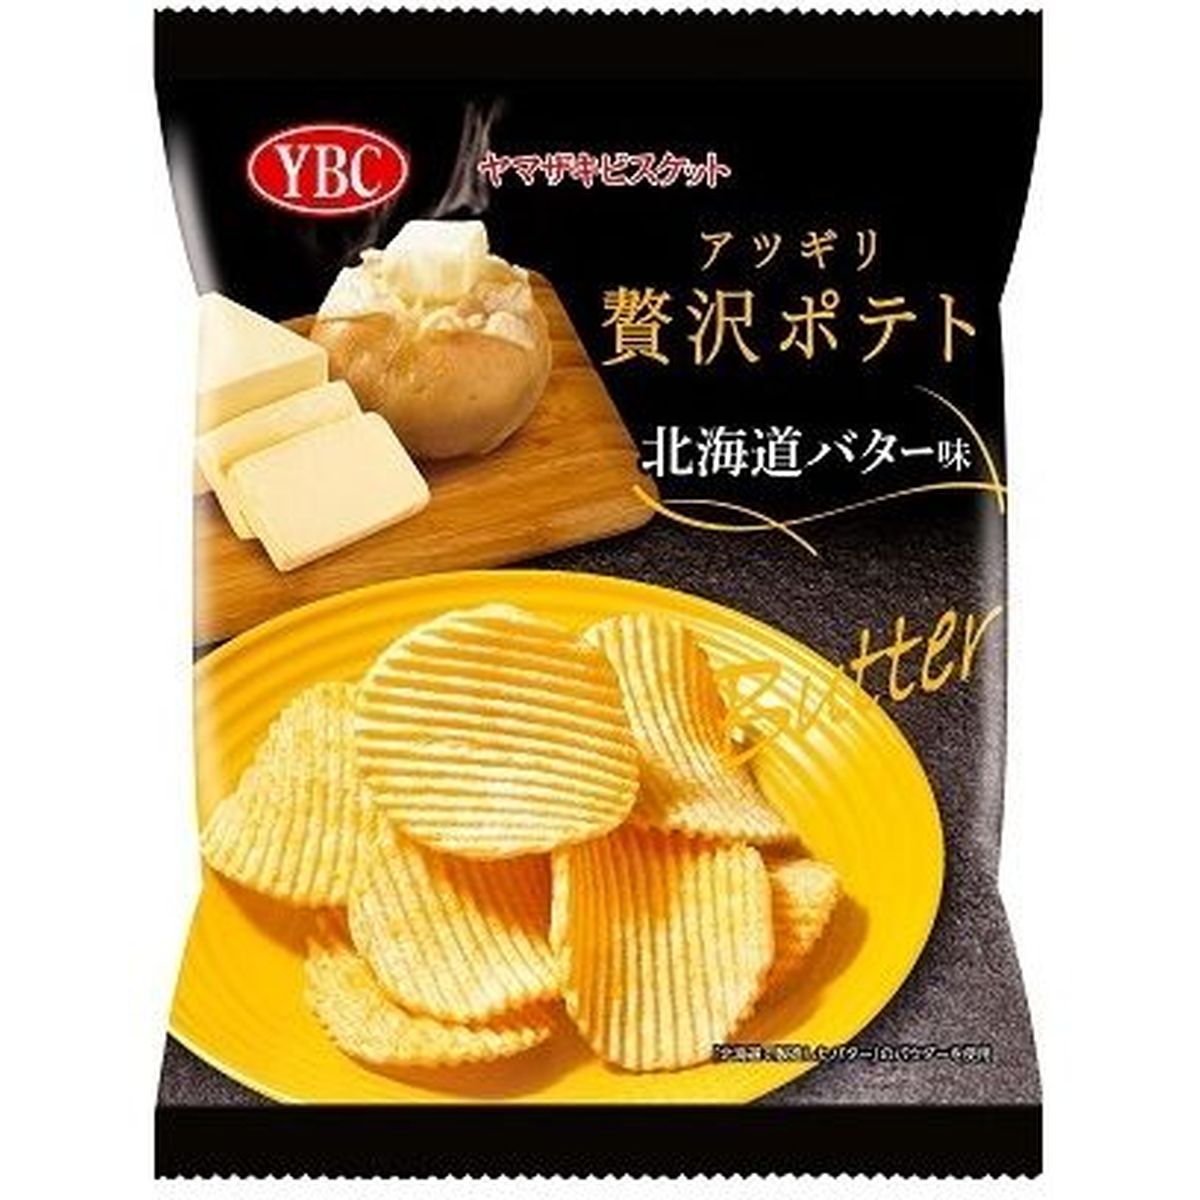 【12個入リ】ヤマザキビスケット アツギリ贅沢ポテト北海道バター味 50g